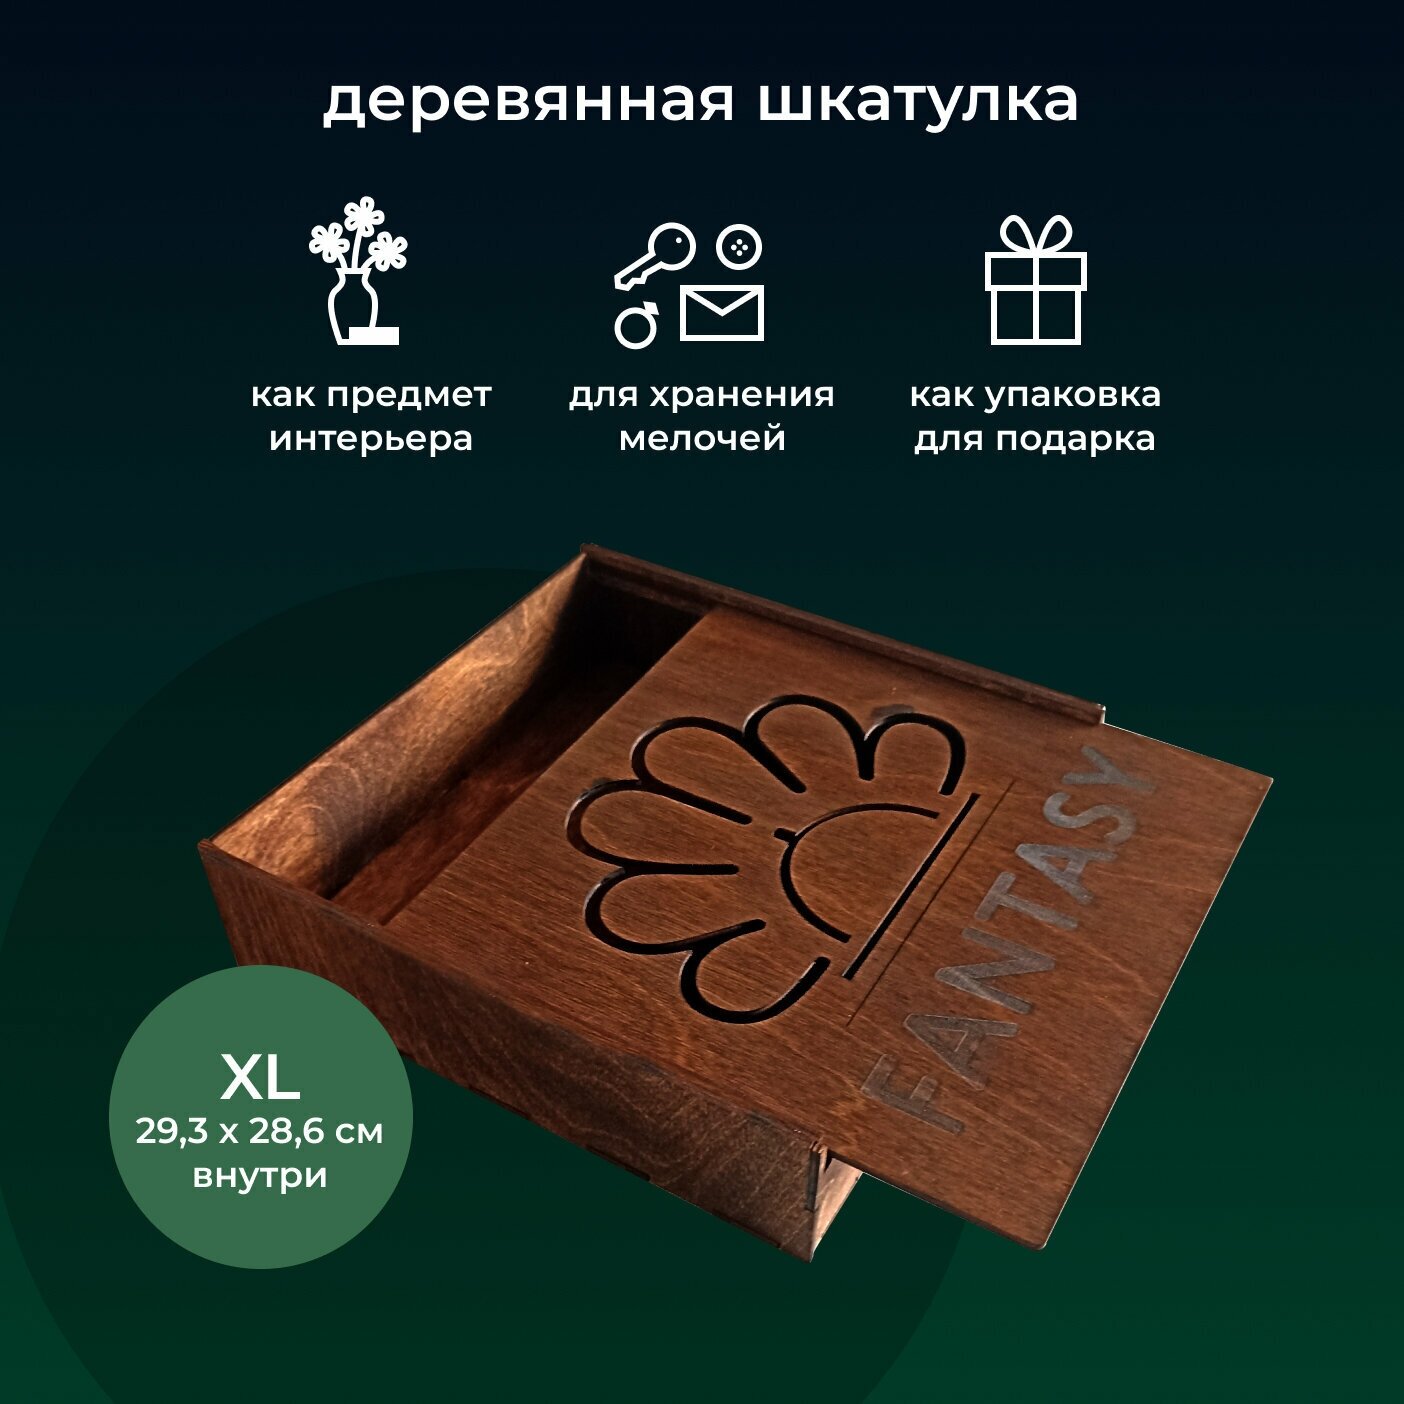 Шкатулка FANTASY деревянная средняя (XL) универсальная классическая тип: пенал на подарок размер снаружи: 30х30 см